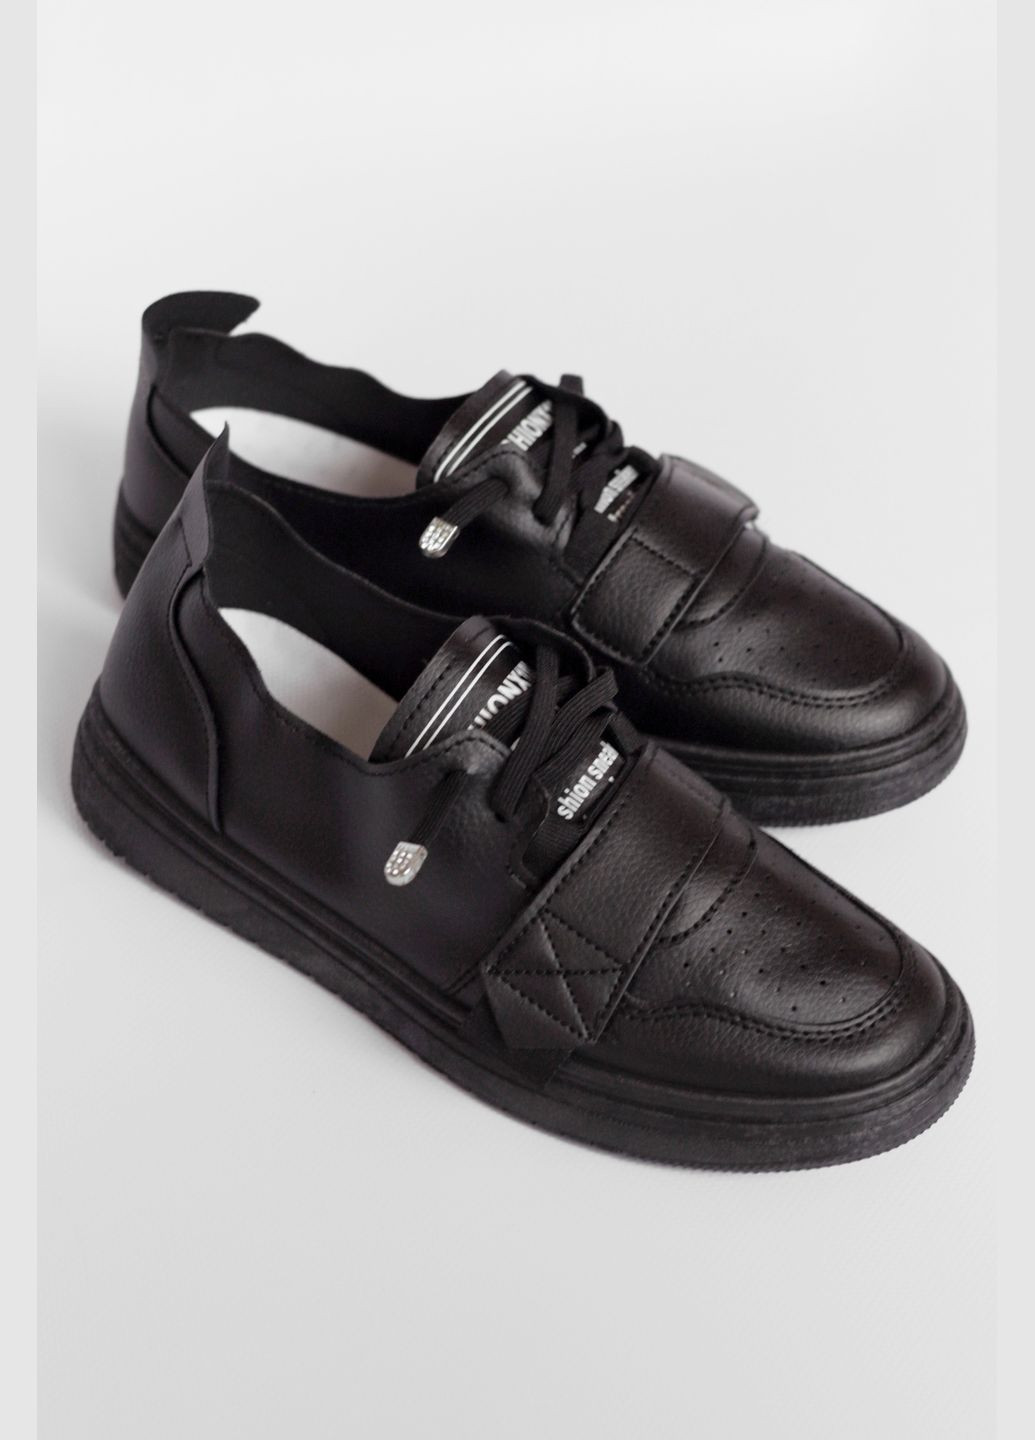 Черные демисезонные кроссовки женские черного цвета на липучке Let's Shop